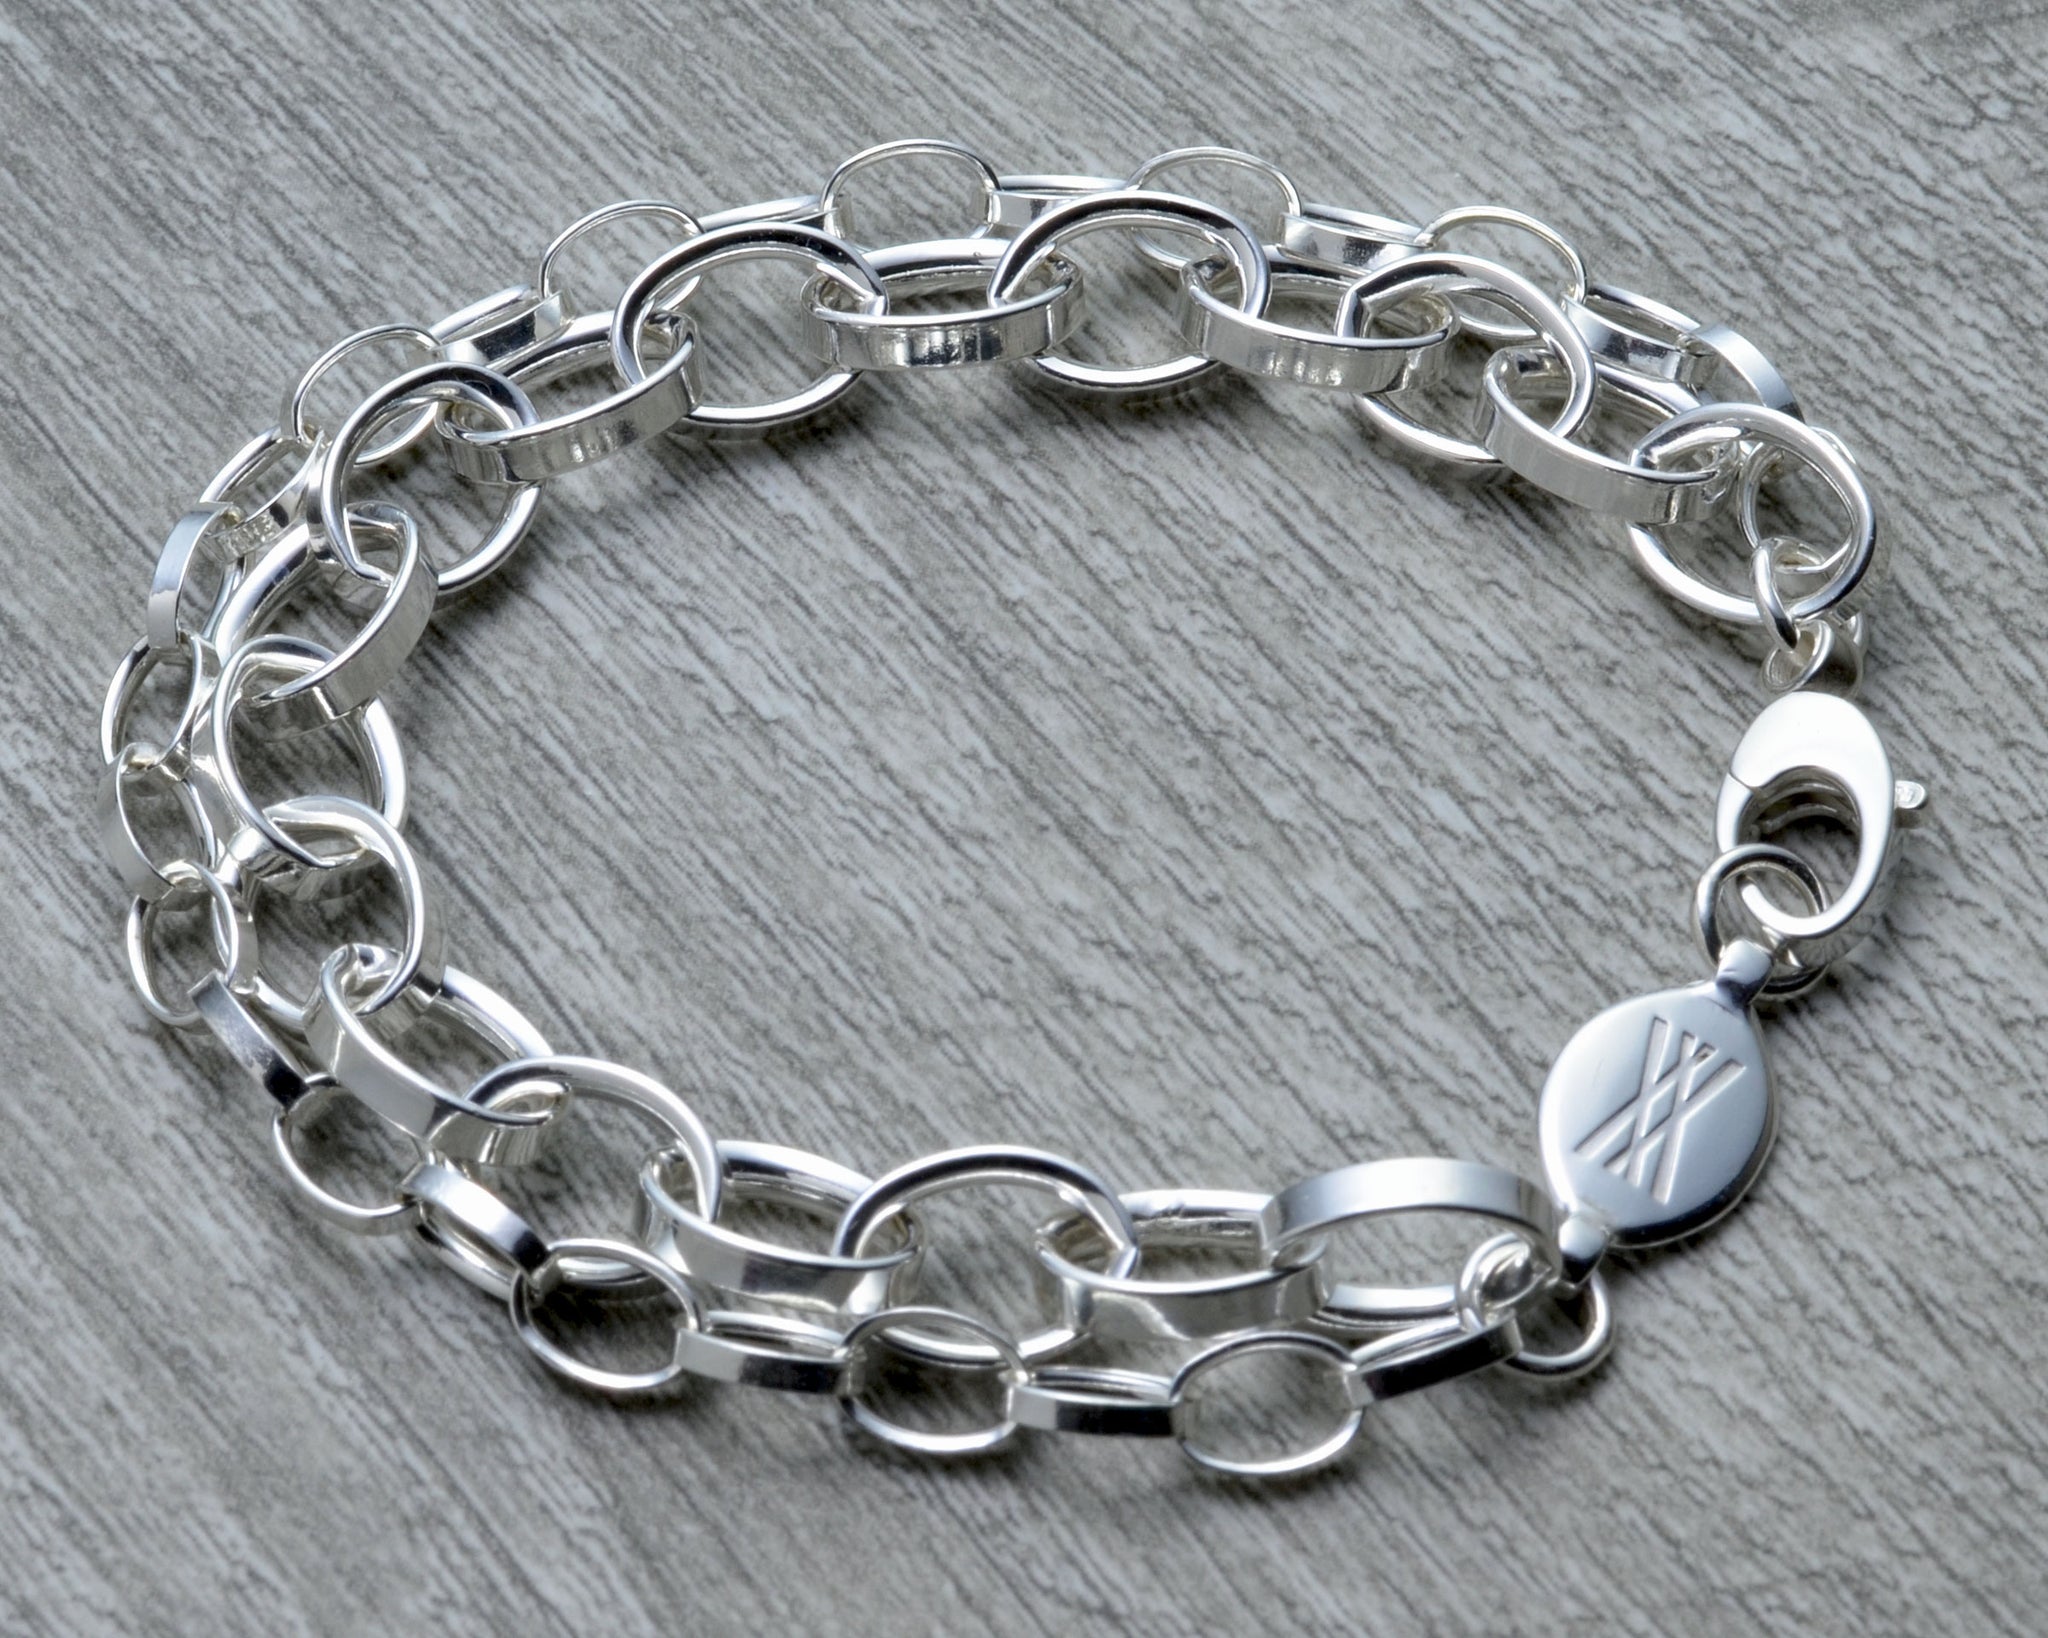 Buy Girl's Silver Charm Bracelet - Lifesutram